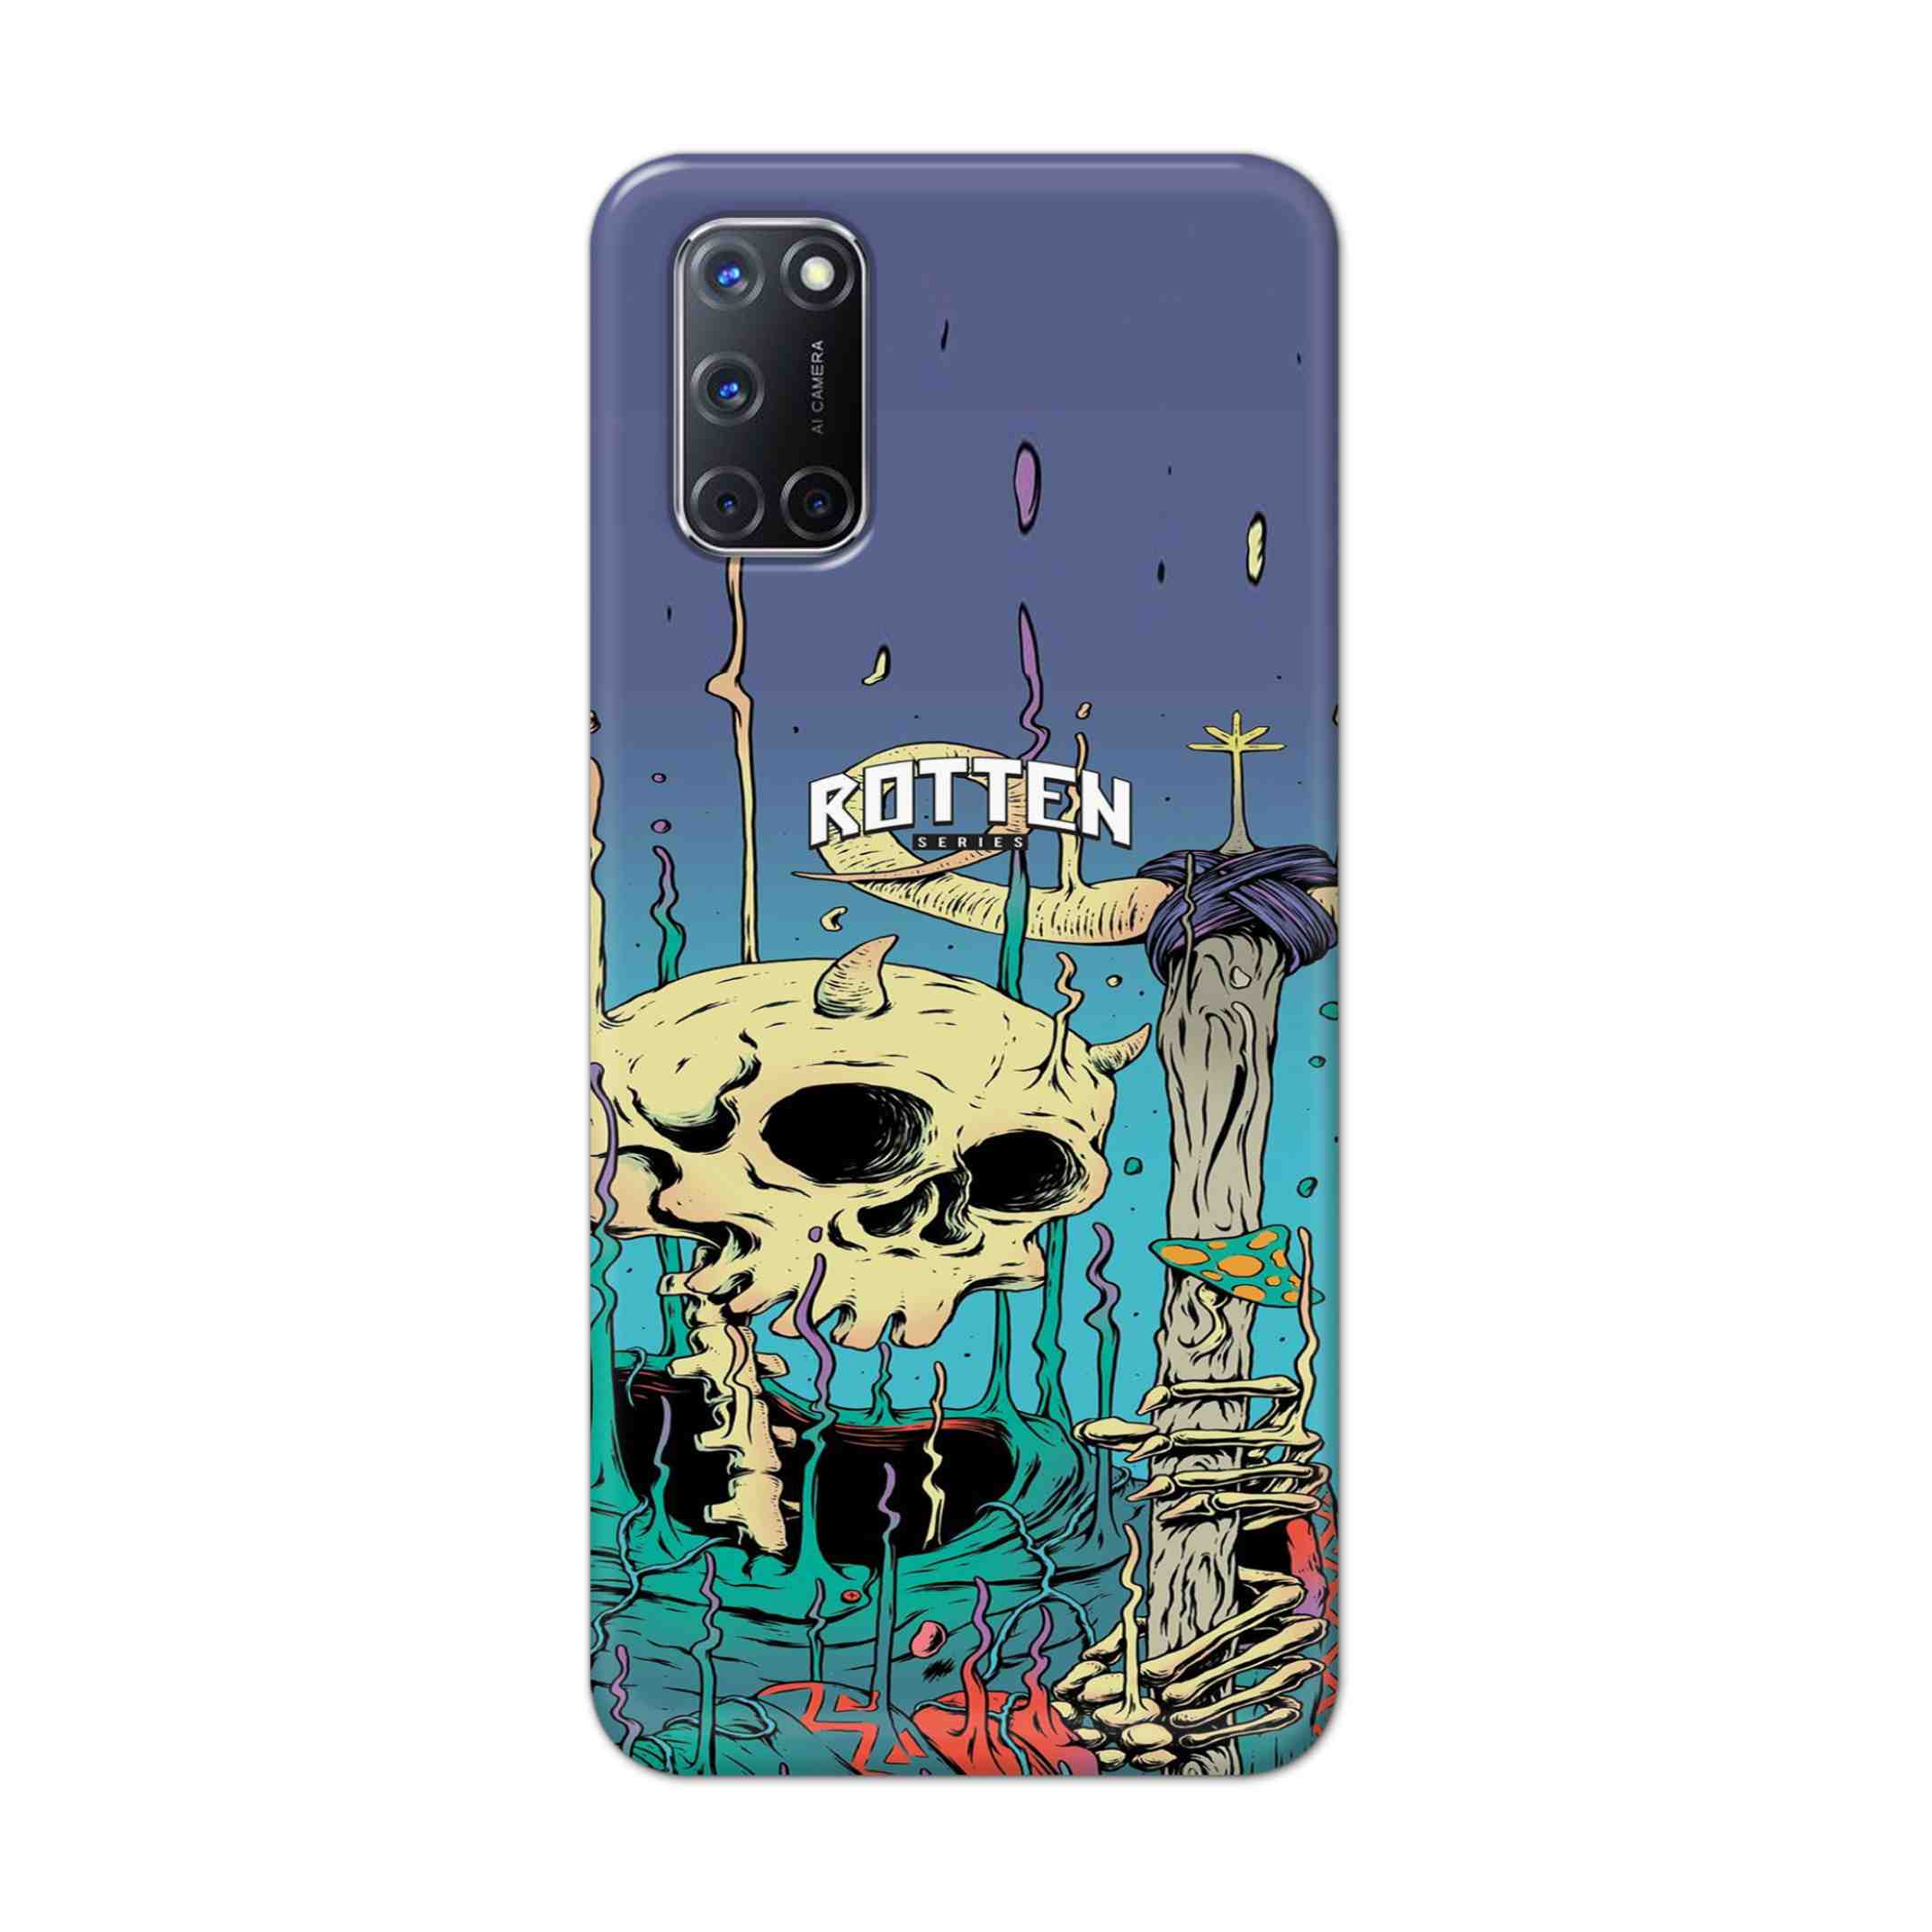 Buy Skull Hard Back Mobile Phone Case Cover For Oppo A52 Online